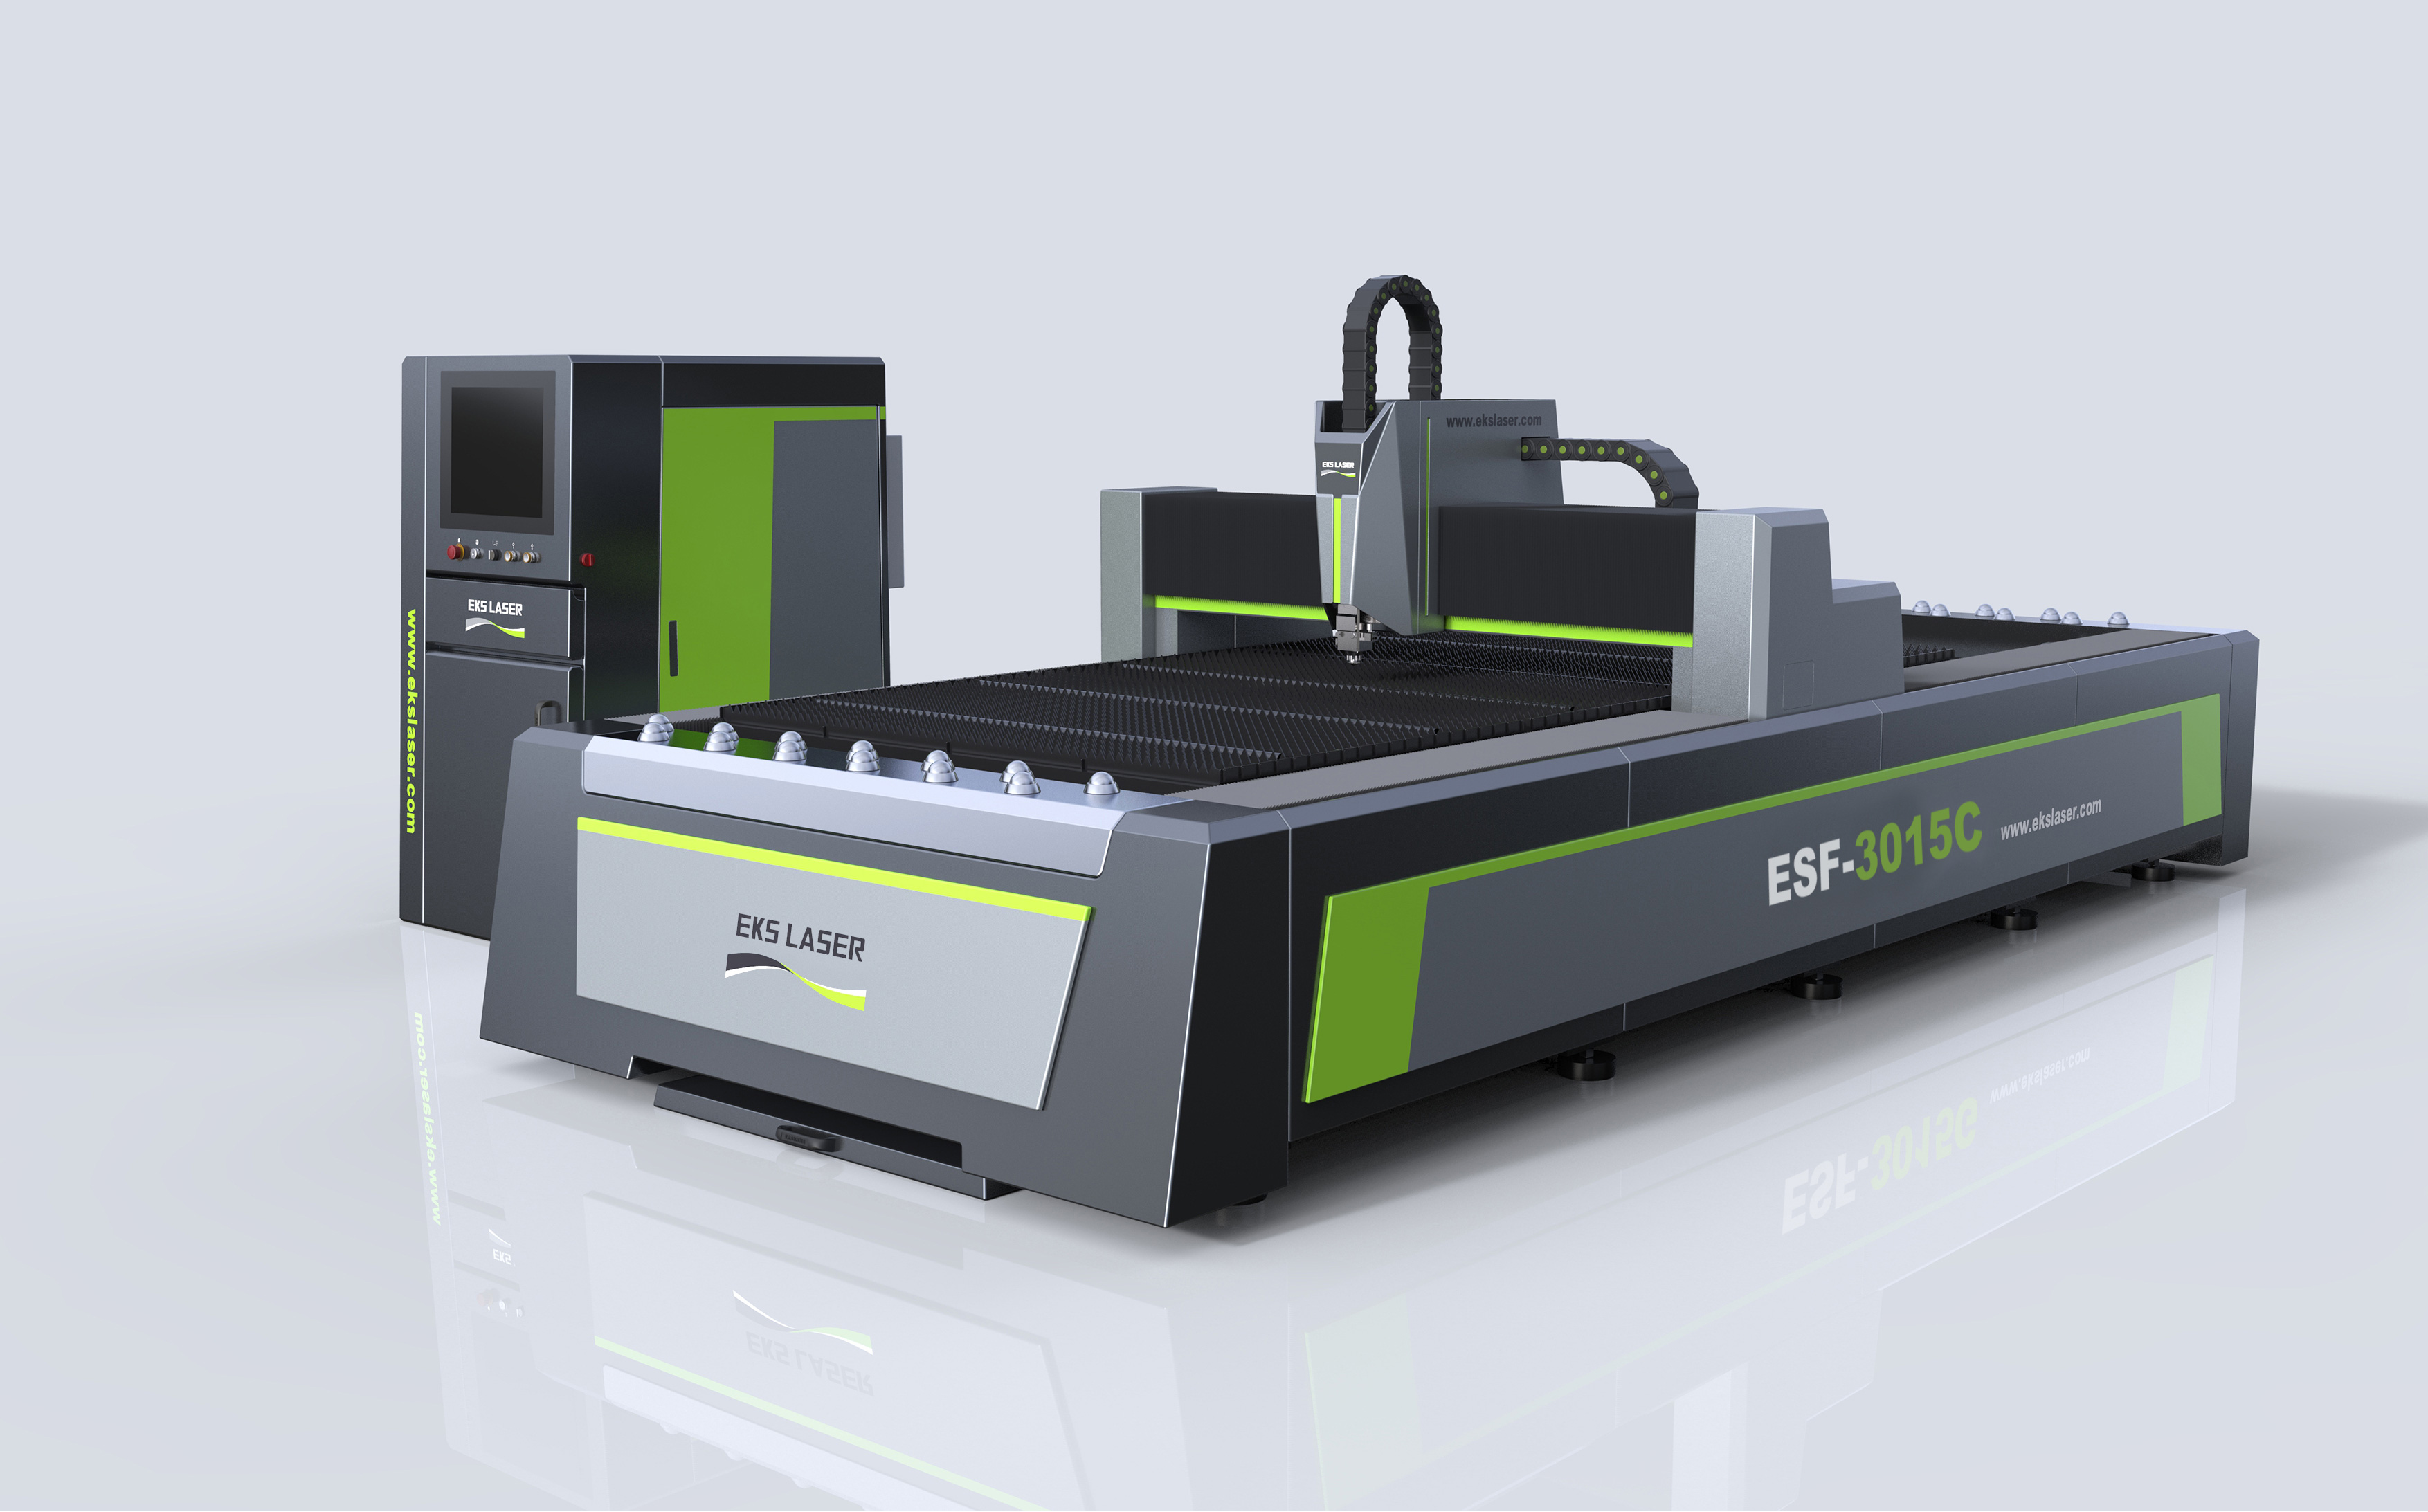 Stainless Steel Sheet Metal CNC Fiber Laser Cutting Machine from China manufacturer - EKS Laser